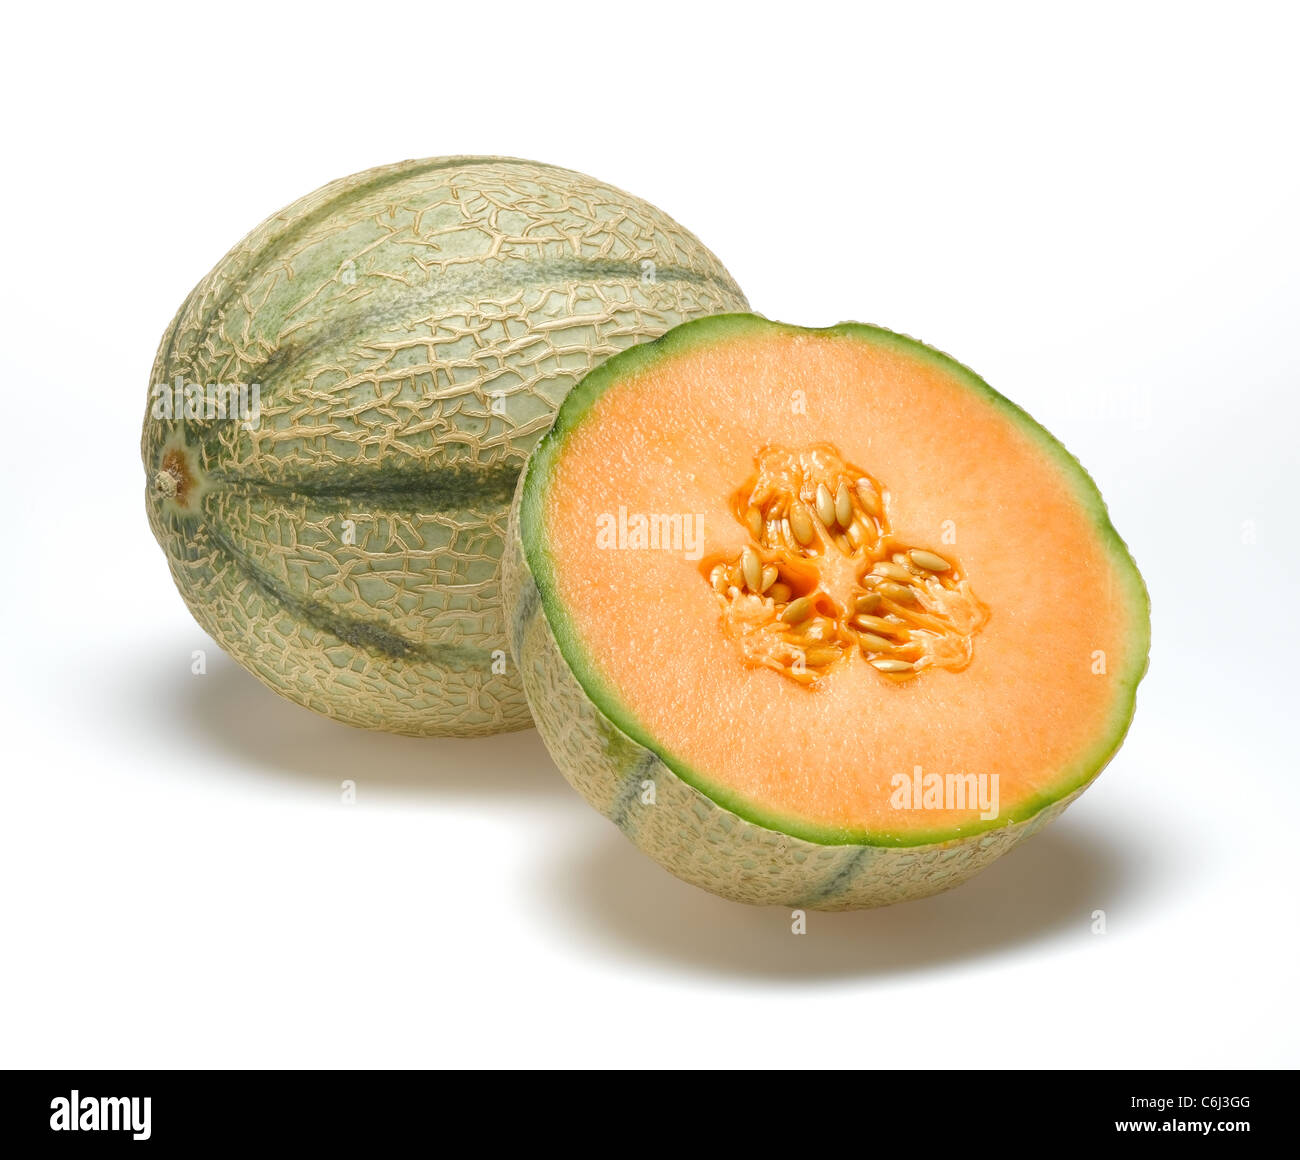 Melon cantaloup coupé Banque D'Images